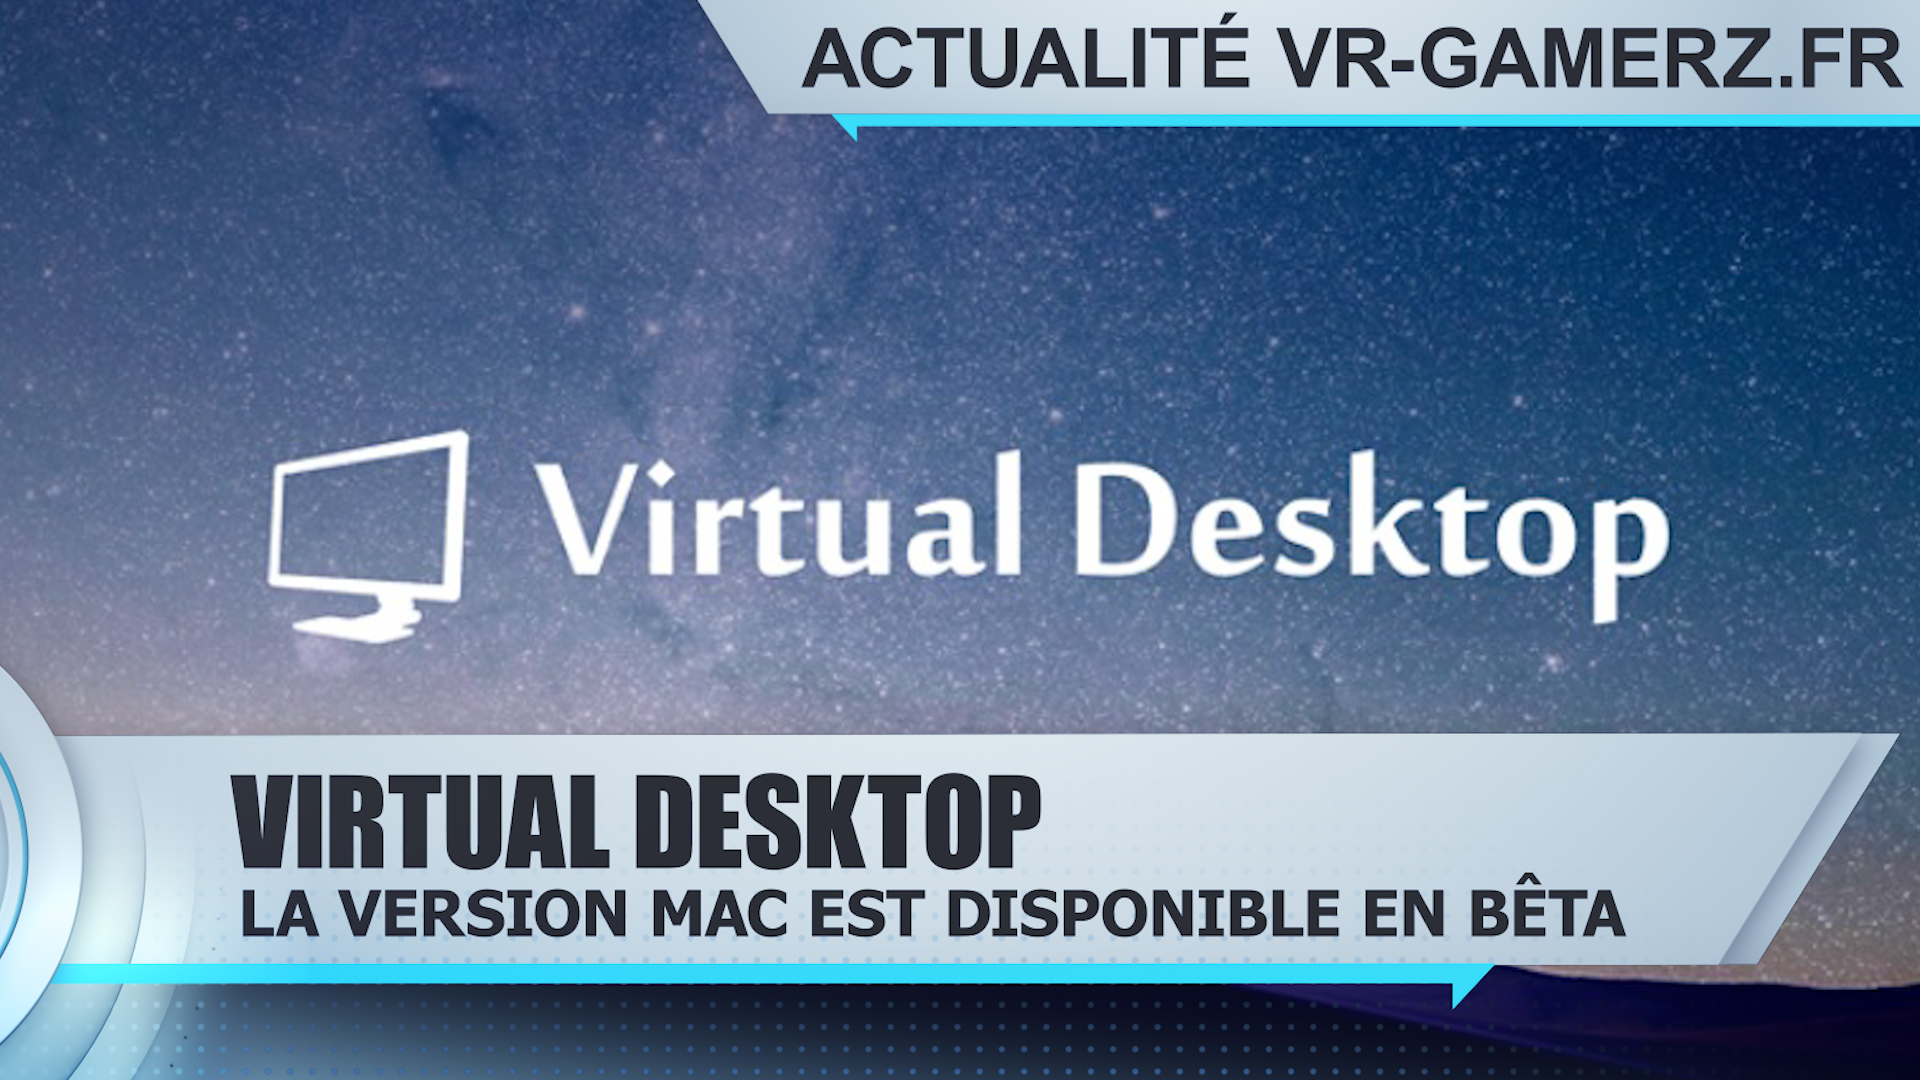 Virtual desktop est disponible sur MAC en version bêta